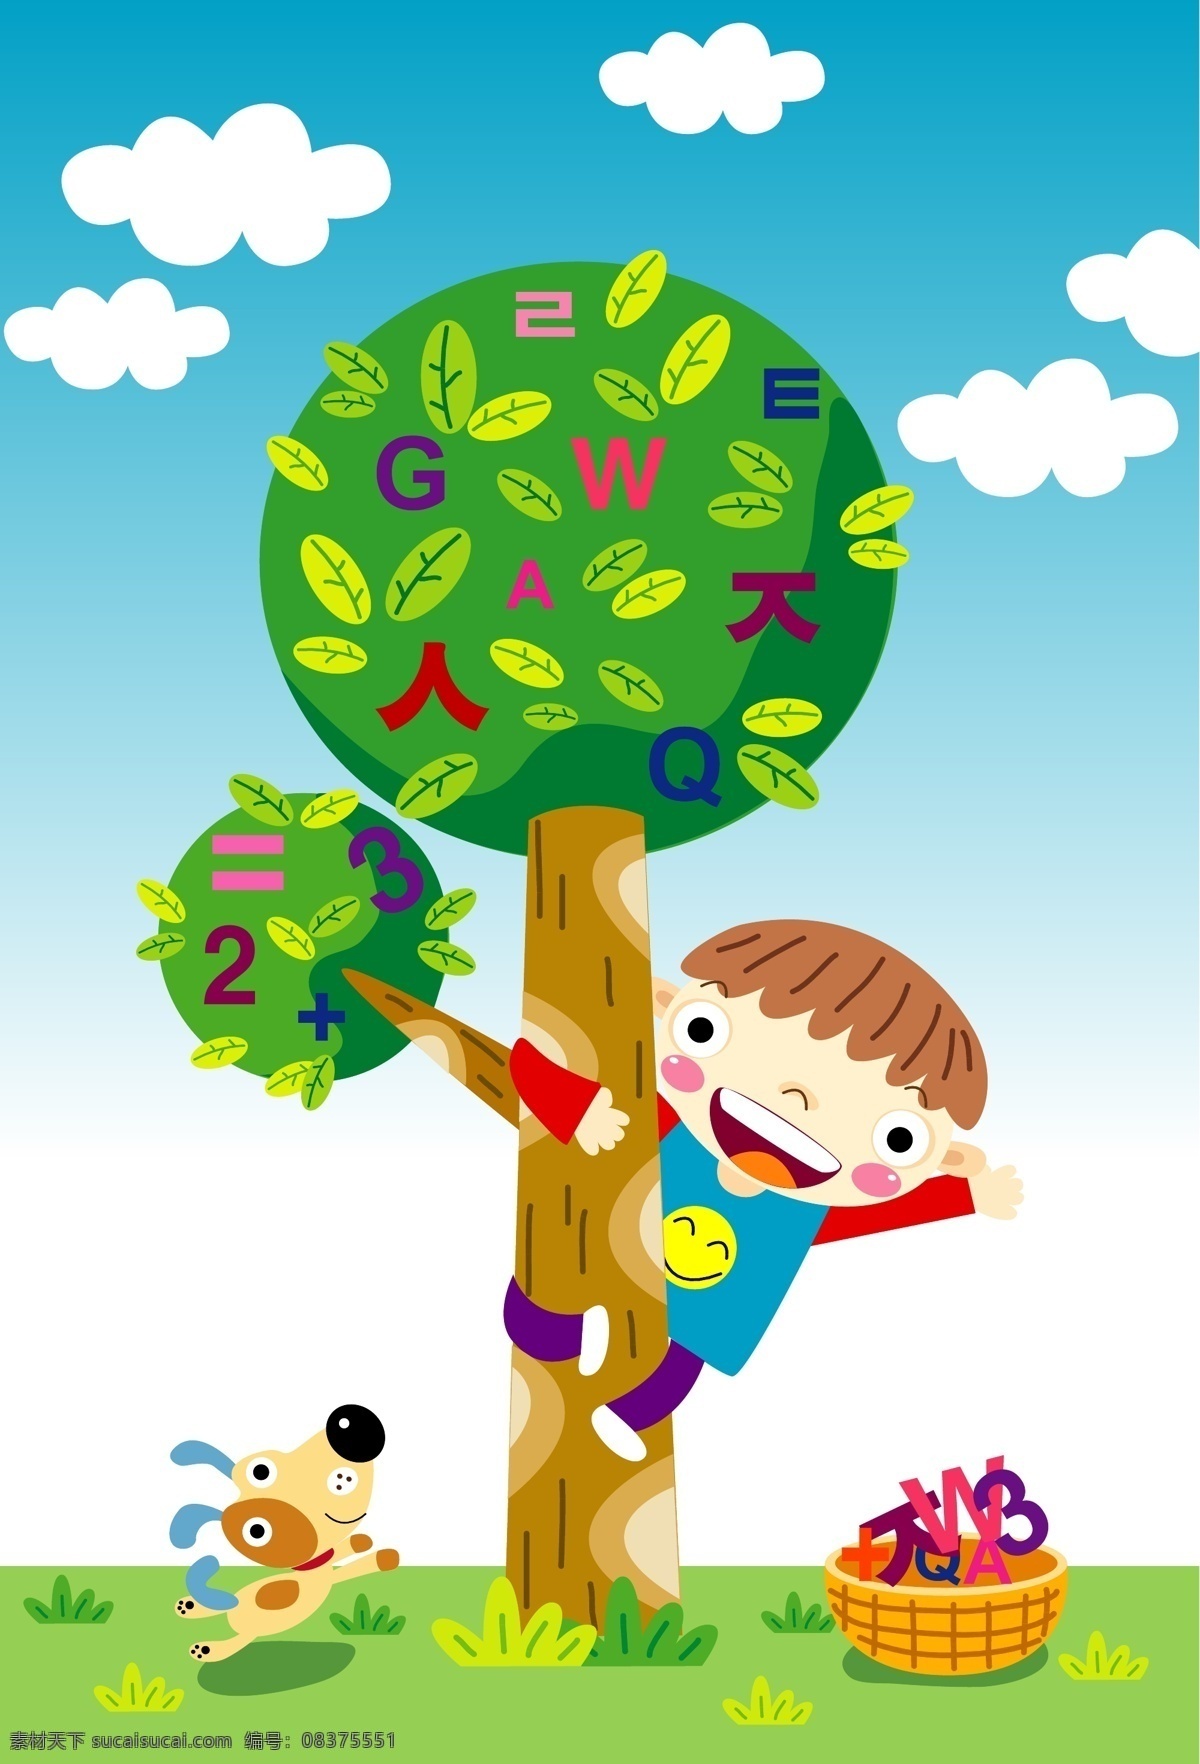 云朵 小狗 树木 卡通元素 卡通 矢量 树木素材 孩子 儿童 数字 数学